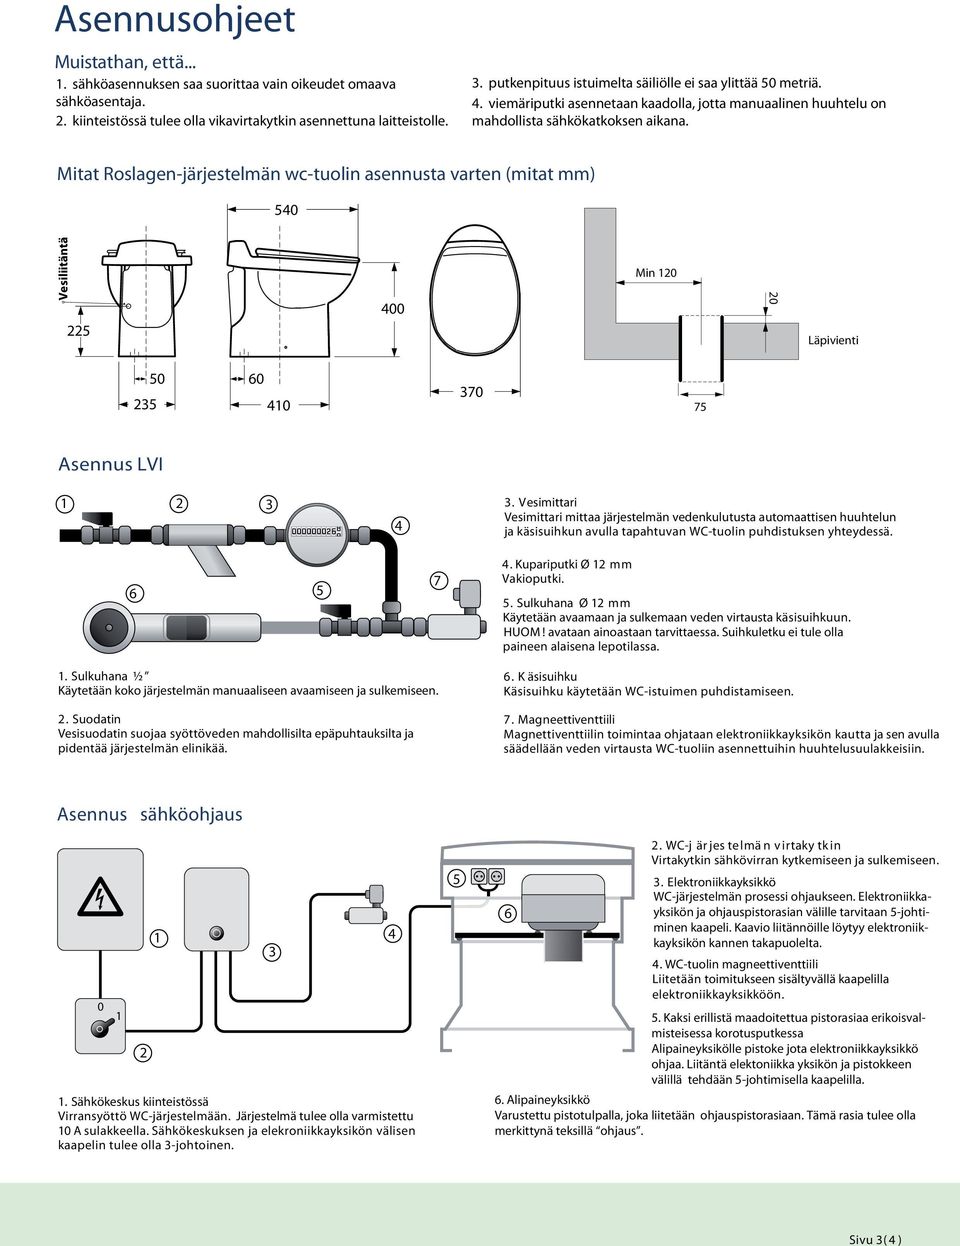 Mitat Roslagen-järjestelmän wc-tuolin asennusta varten (mitat mm) 0 Vesiliitäntä 00 Min 0 0 Läpivienti 0 0 0 0 Asennus LVI.